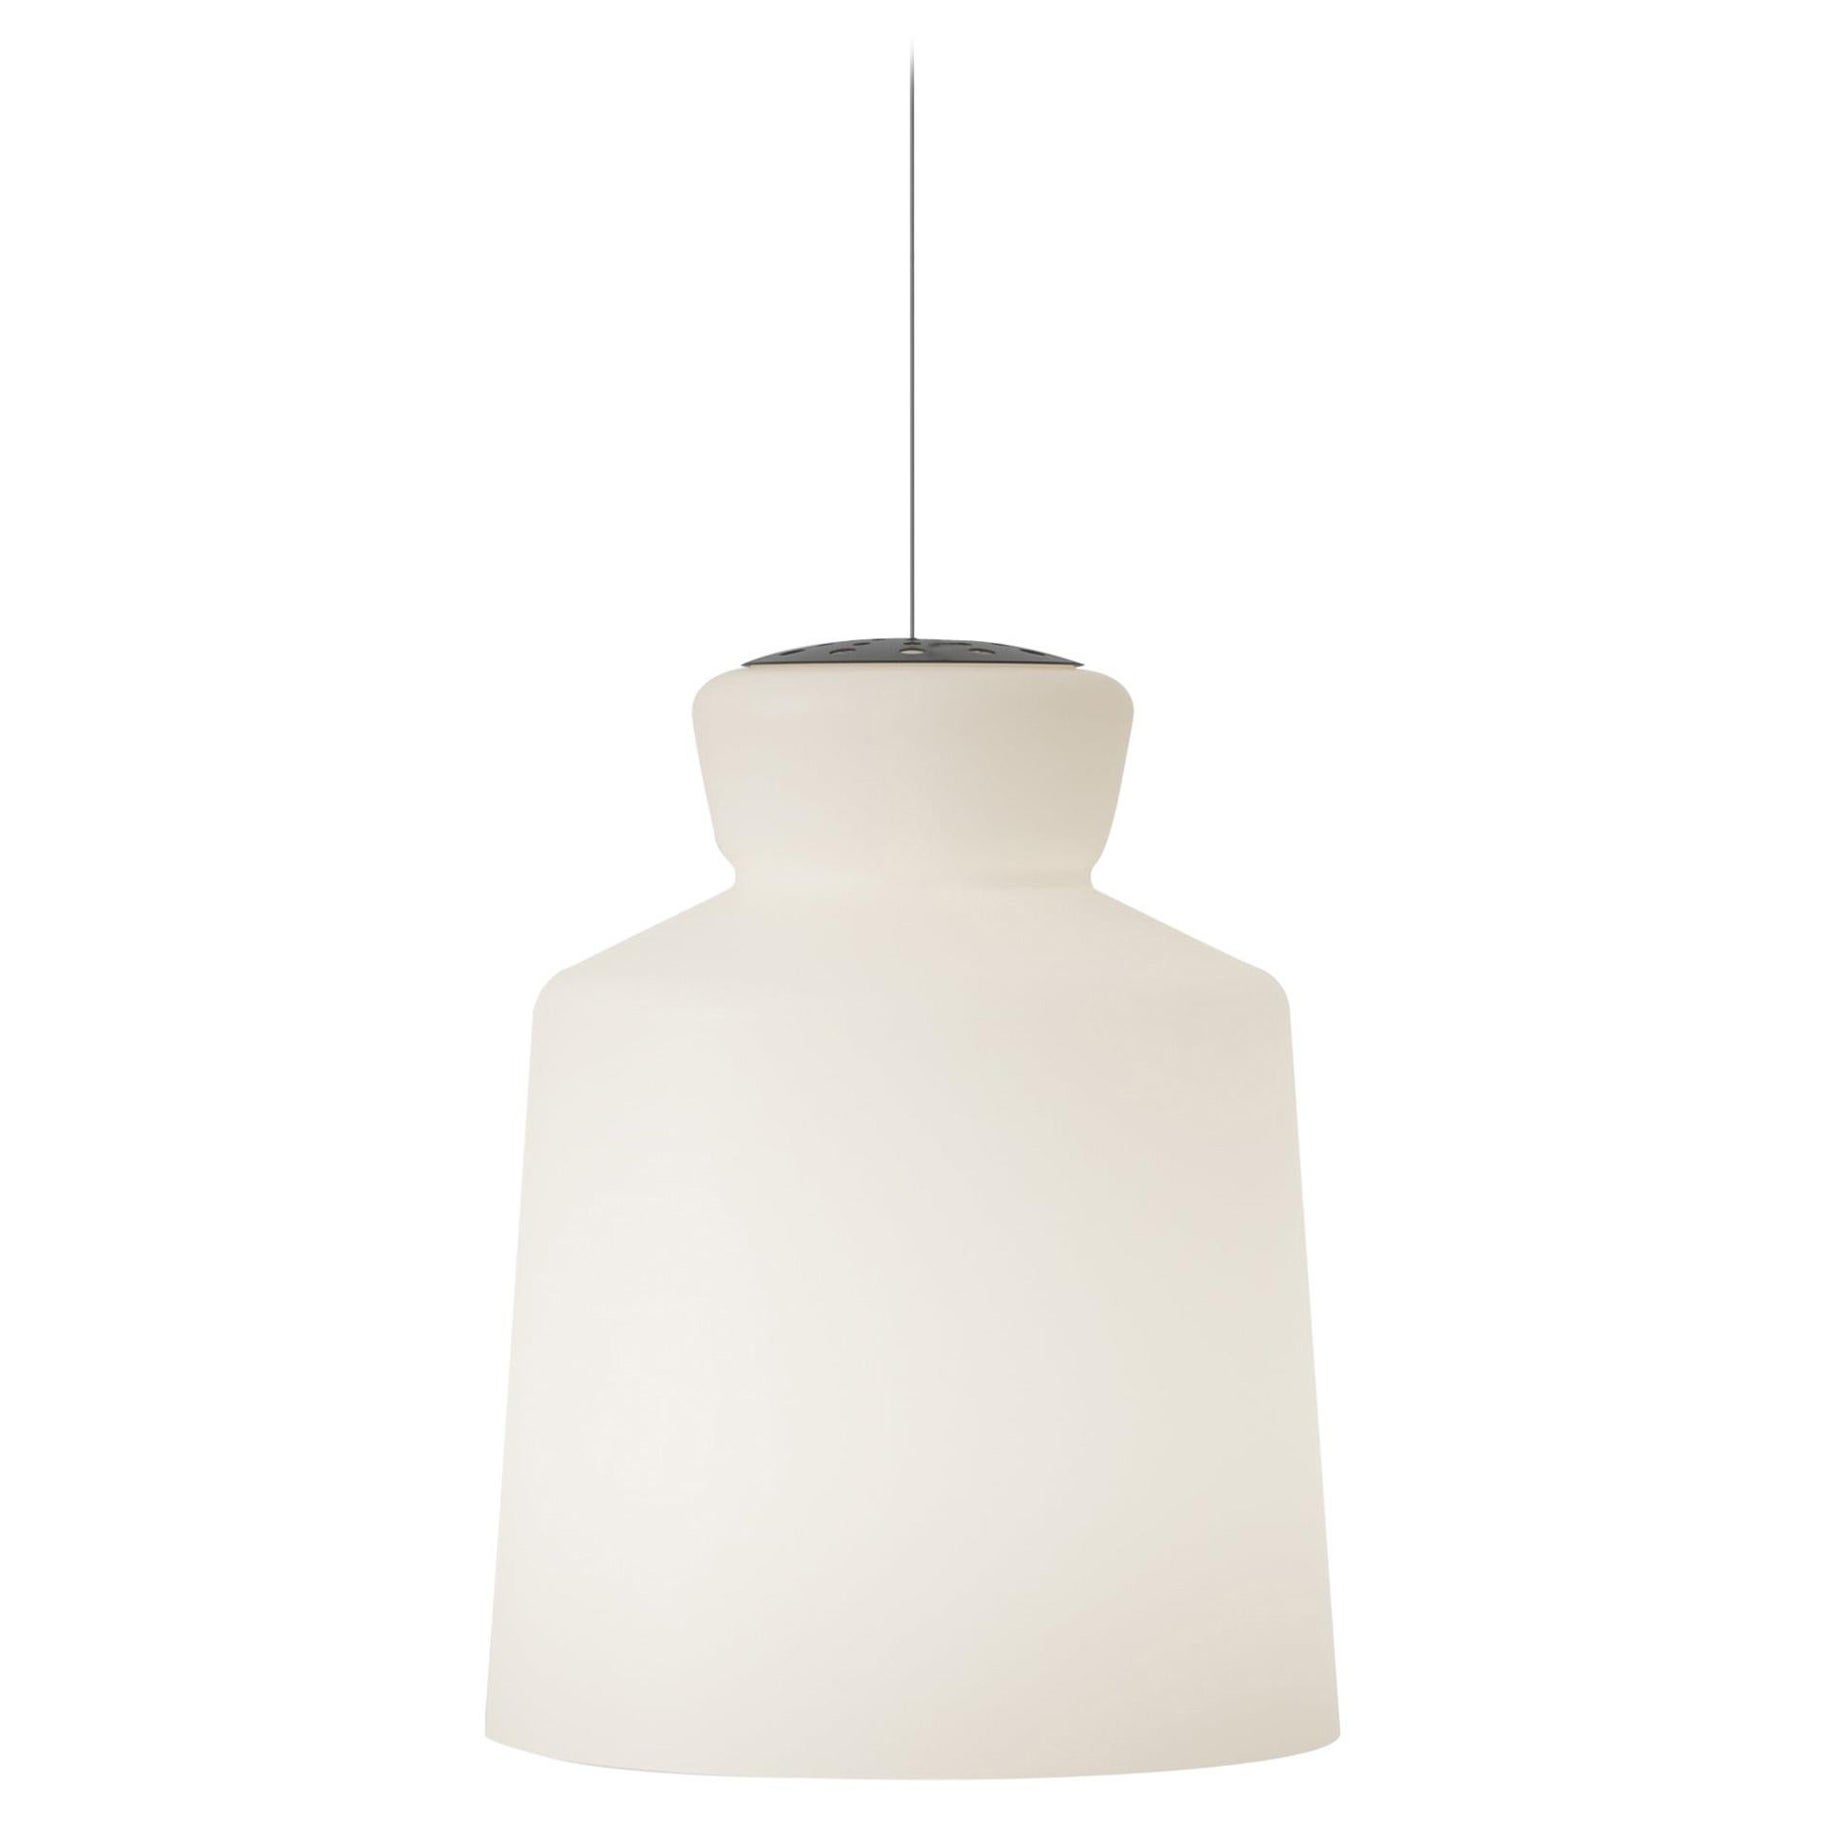 Santi & Borachia SB Cinquantotto Opaline Ceiling Lamp for Astep